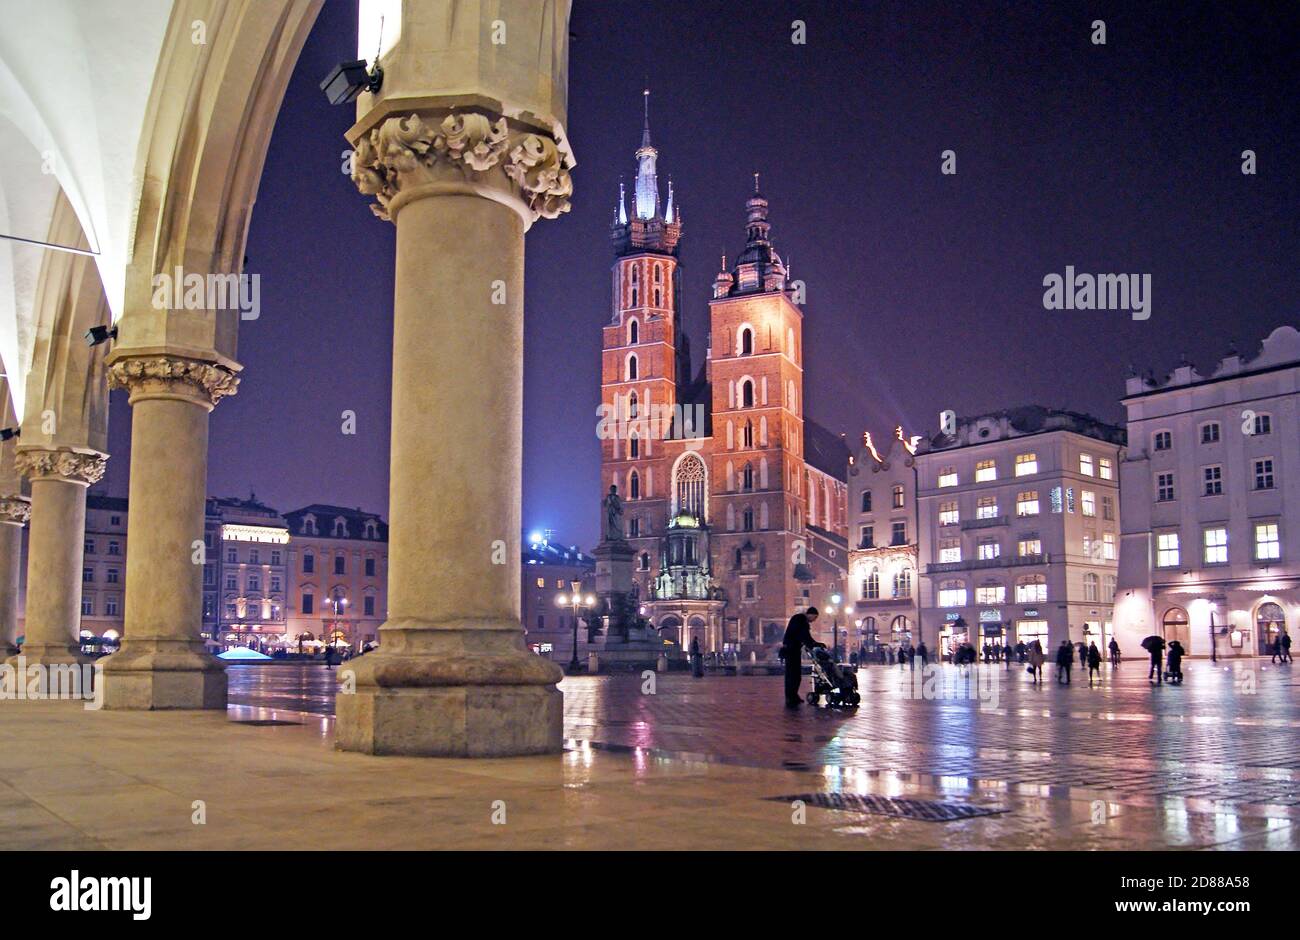 Die Abendlichter reflektieren historische Wahrzeichen auf dem regengetränkten Altstädter Platz in Krakau, Polen, am 10. Januar 2010. Stockfoto